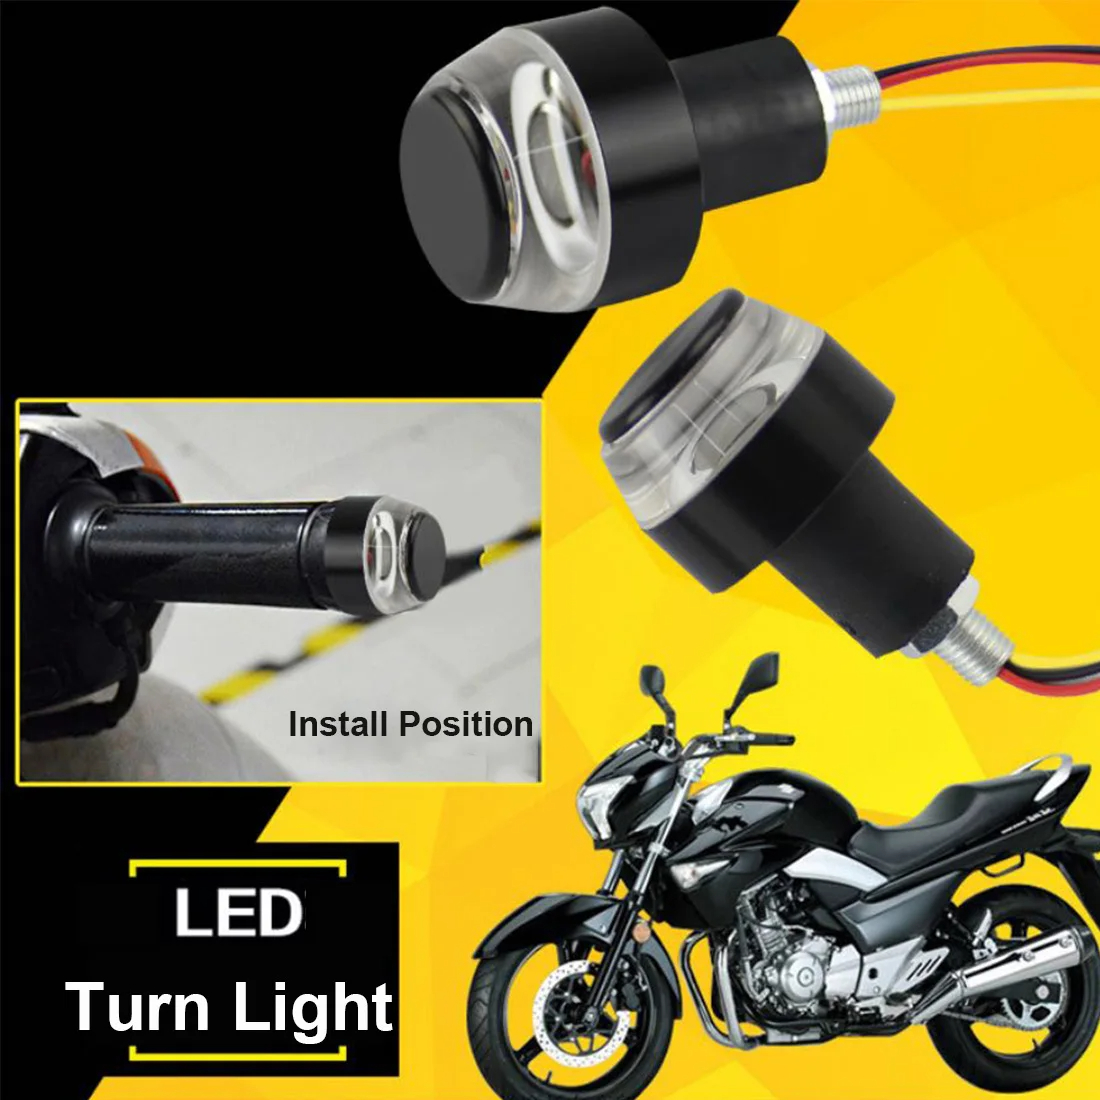 2PCS Motorcycle Turn Signal Light, 12 LEDs Turn Signal Indicator Lamp, Amber/White Front Handlebar End Light, Waterproof Blinker Strobe Light